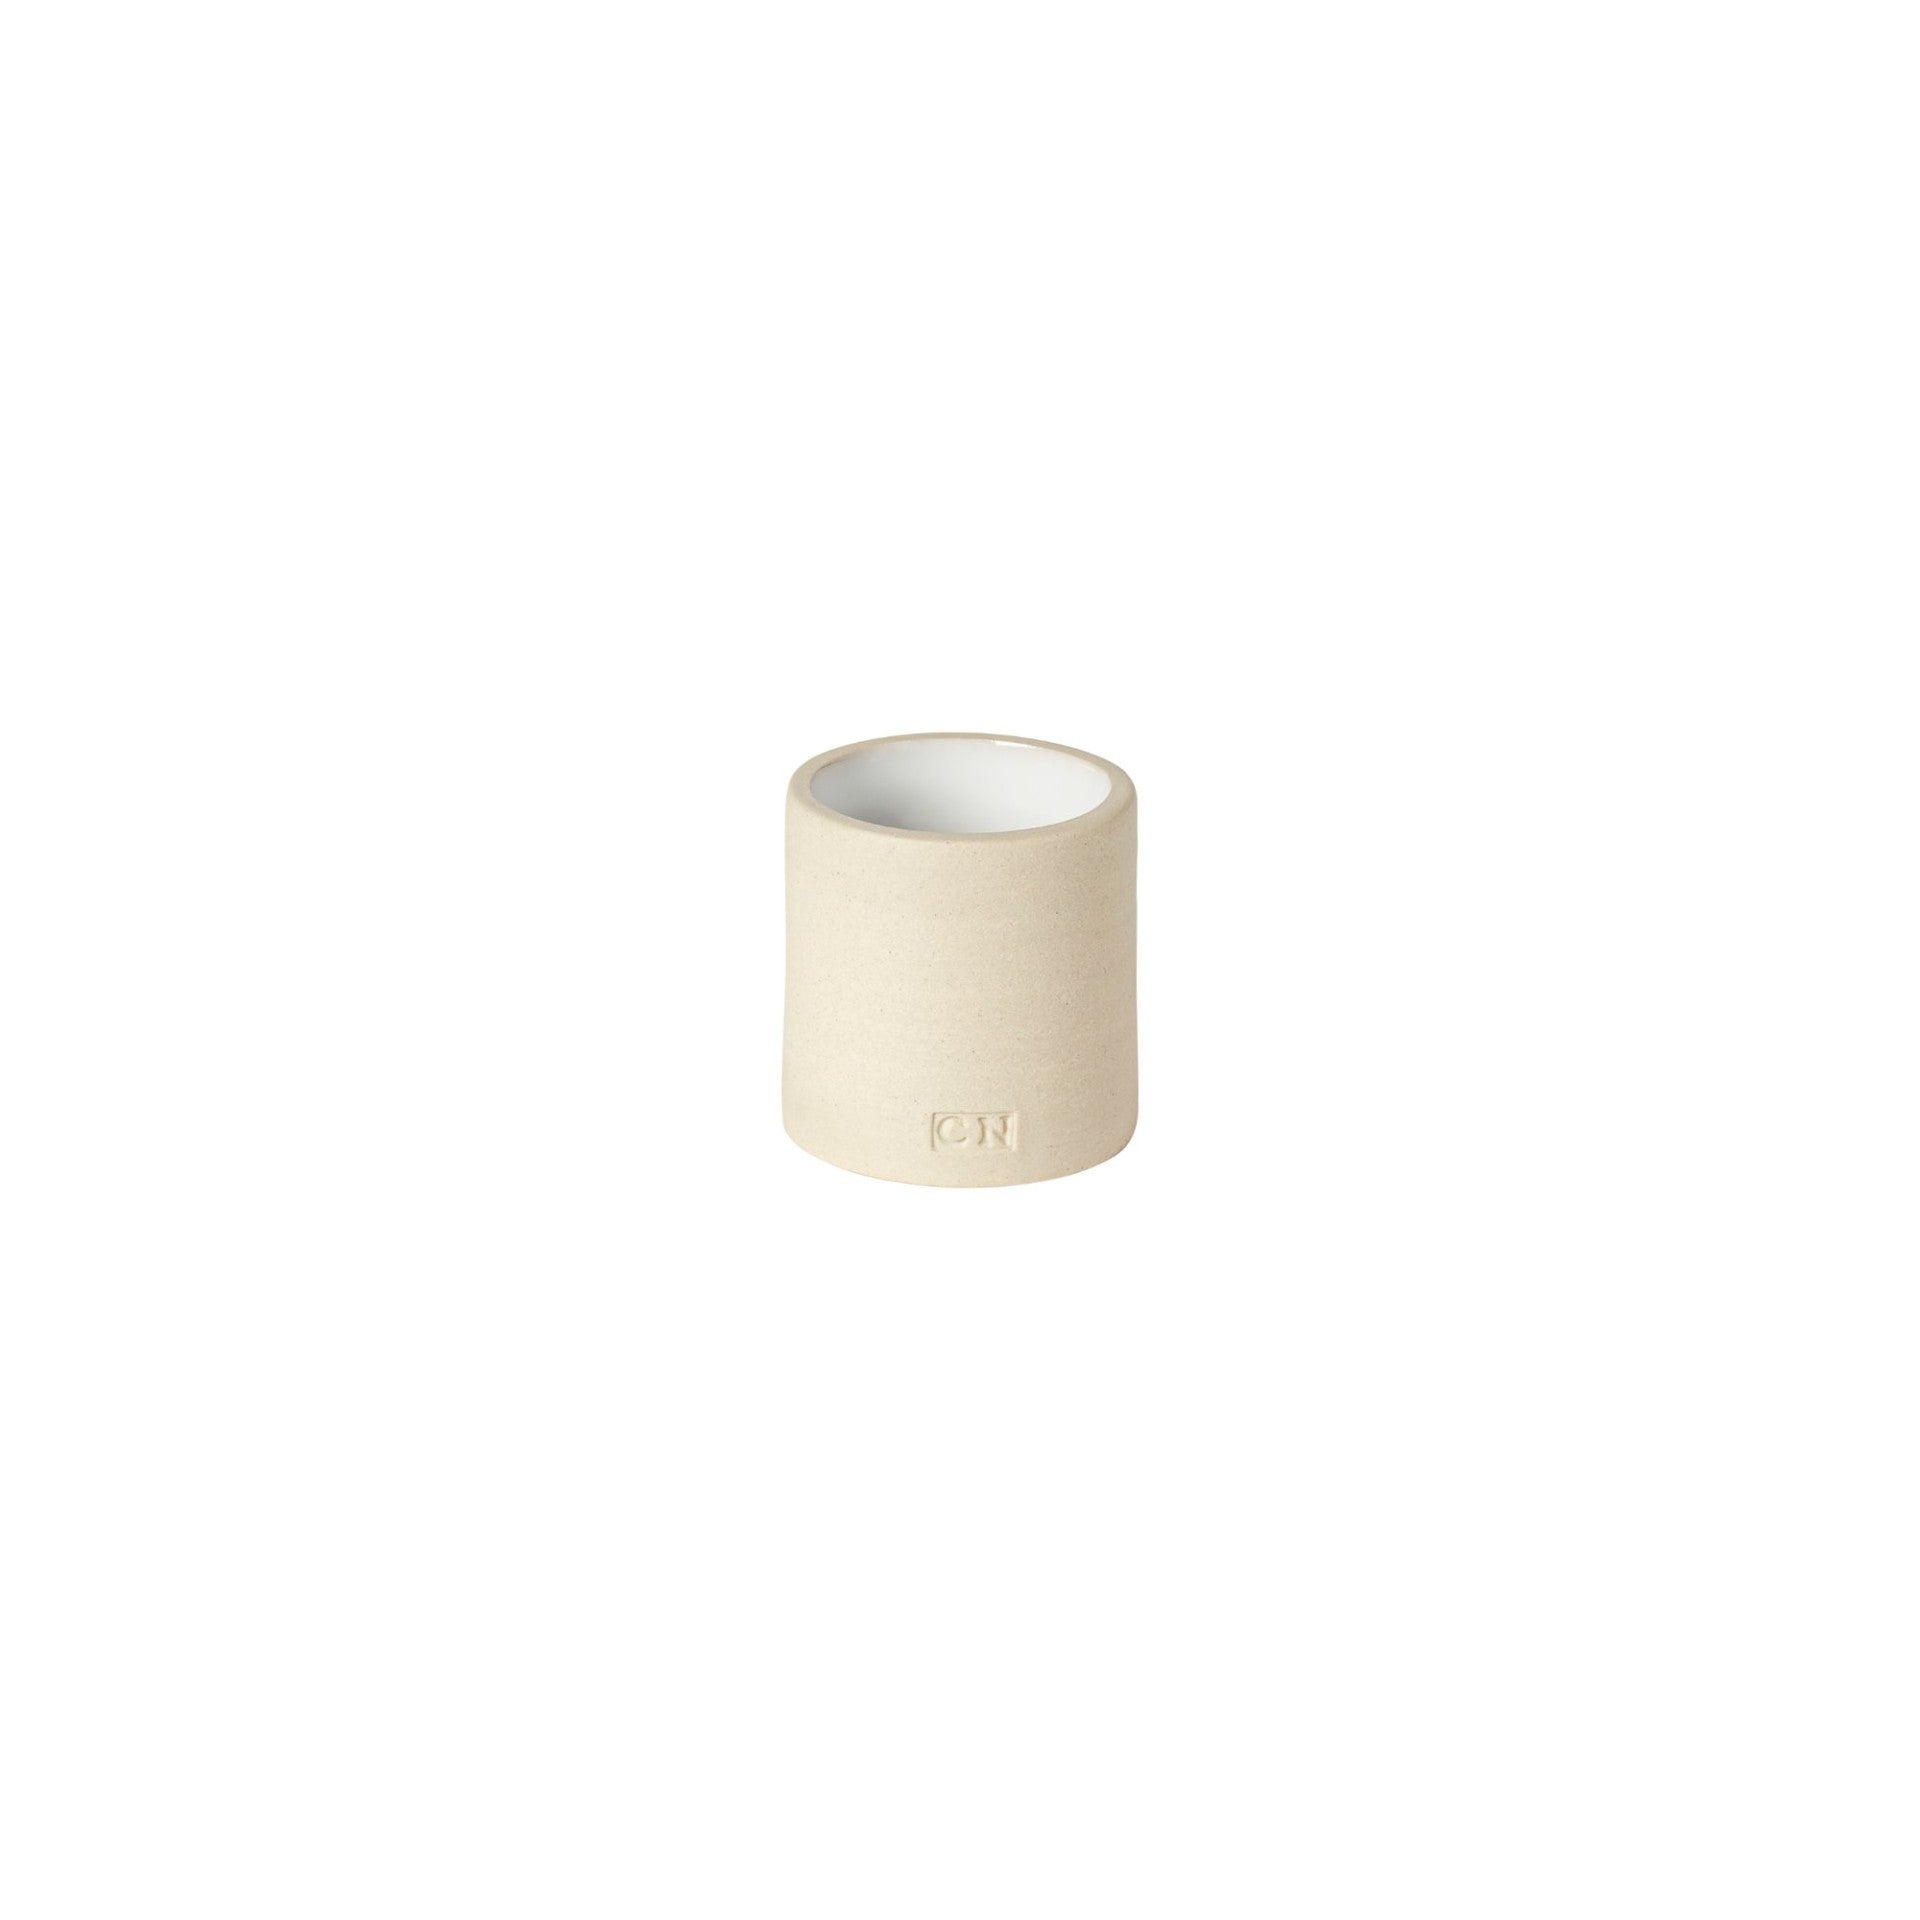 Ceramic Eco Napkin Rings Round - White - Set of 4